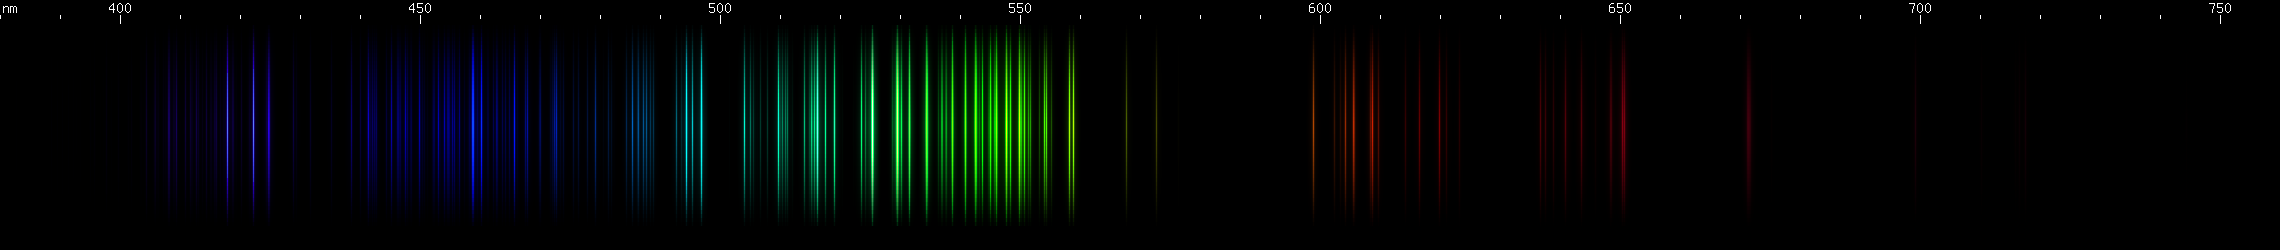 Spectral Lines of Phosphorus